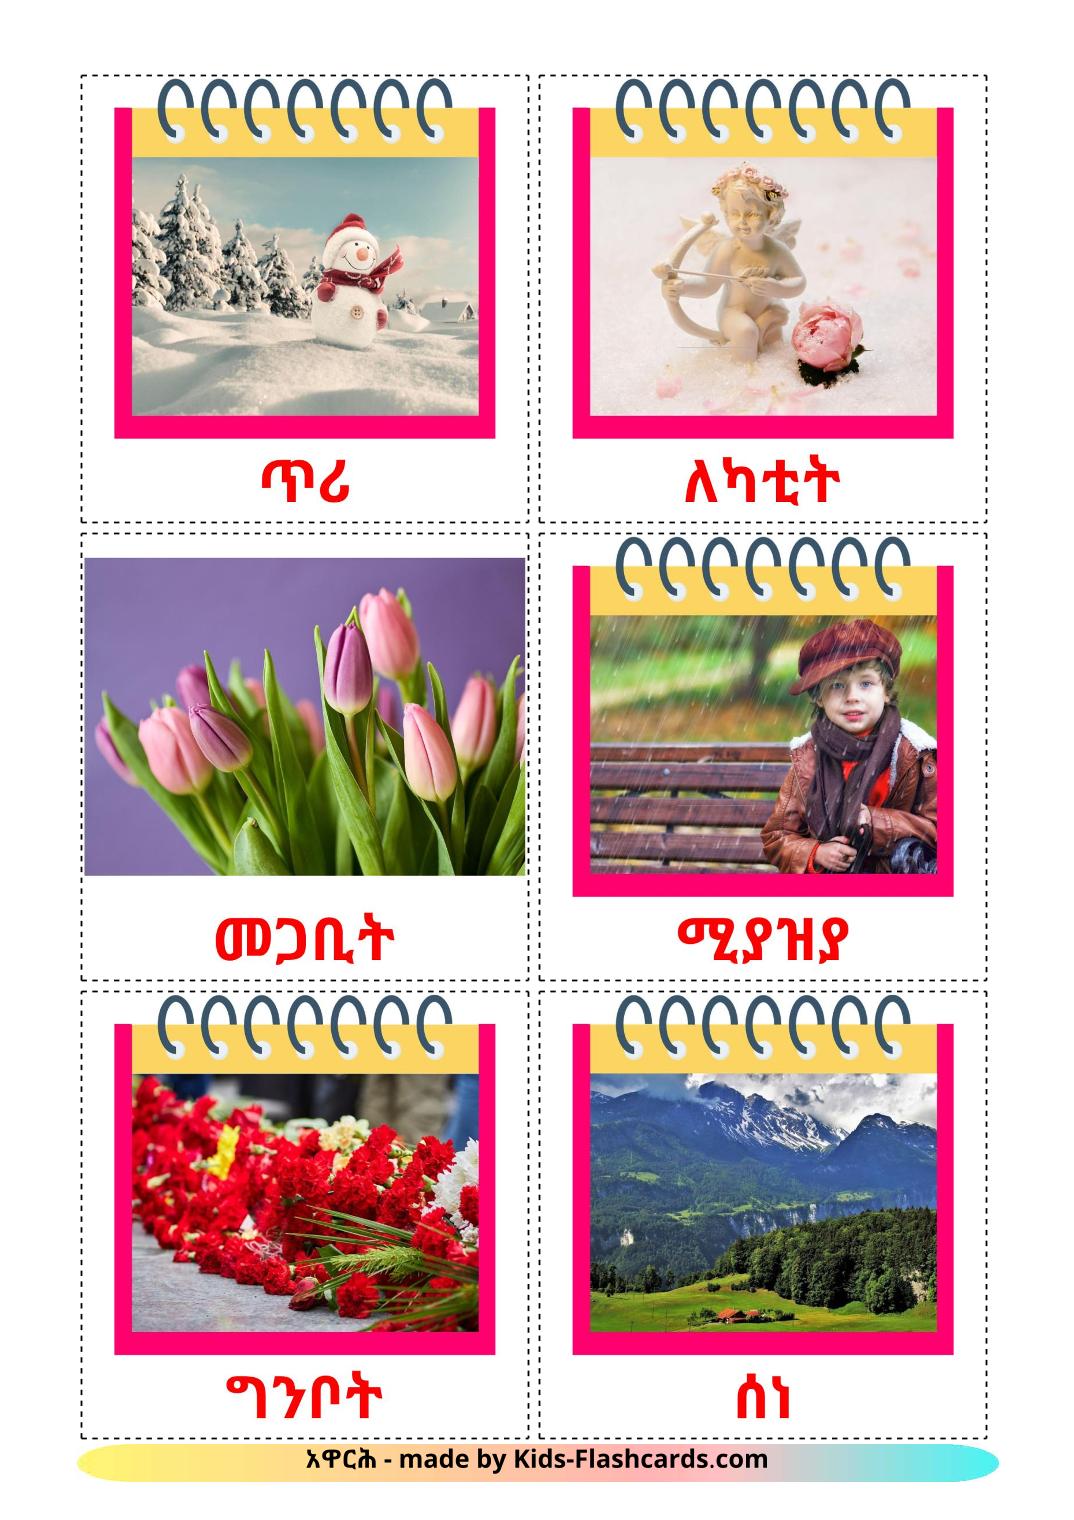 Meses do ano - 12 Flashcards tigrigna(eritreia)es gratuitos para impressão